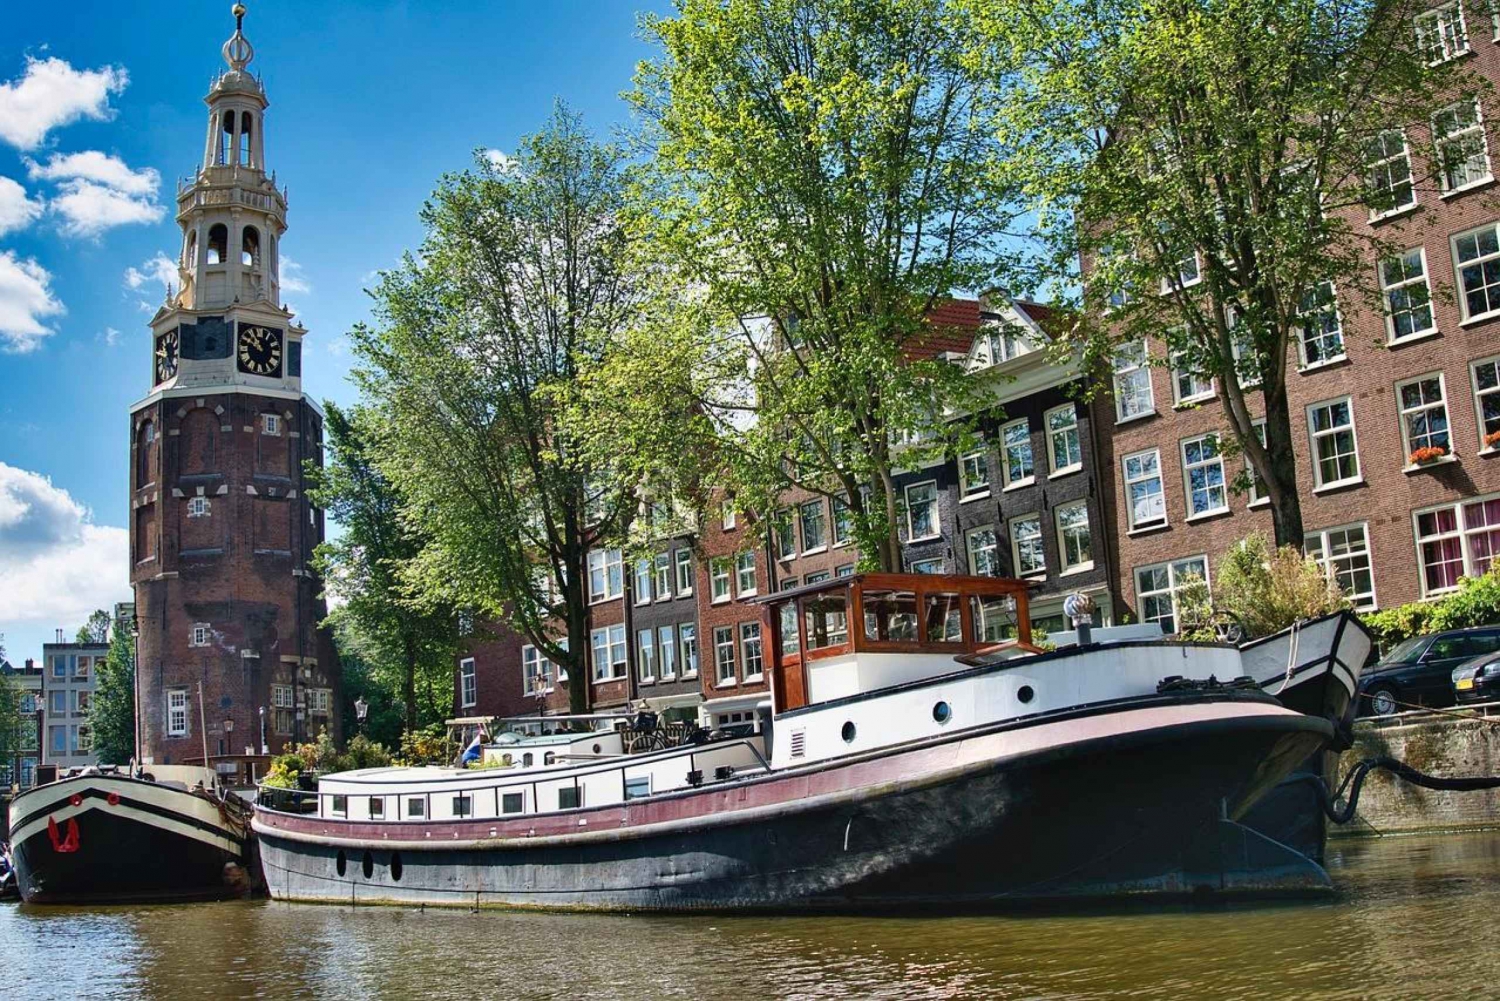 Amsterdam: Stads hoogtepunten zelf audiogids met gids